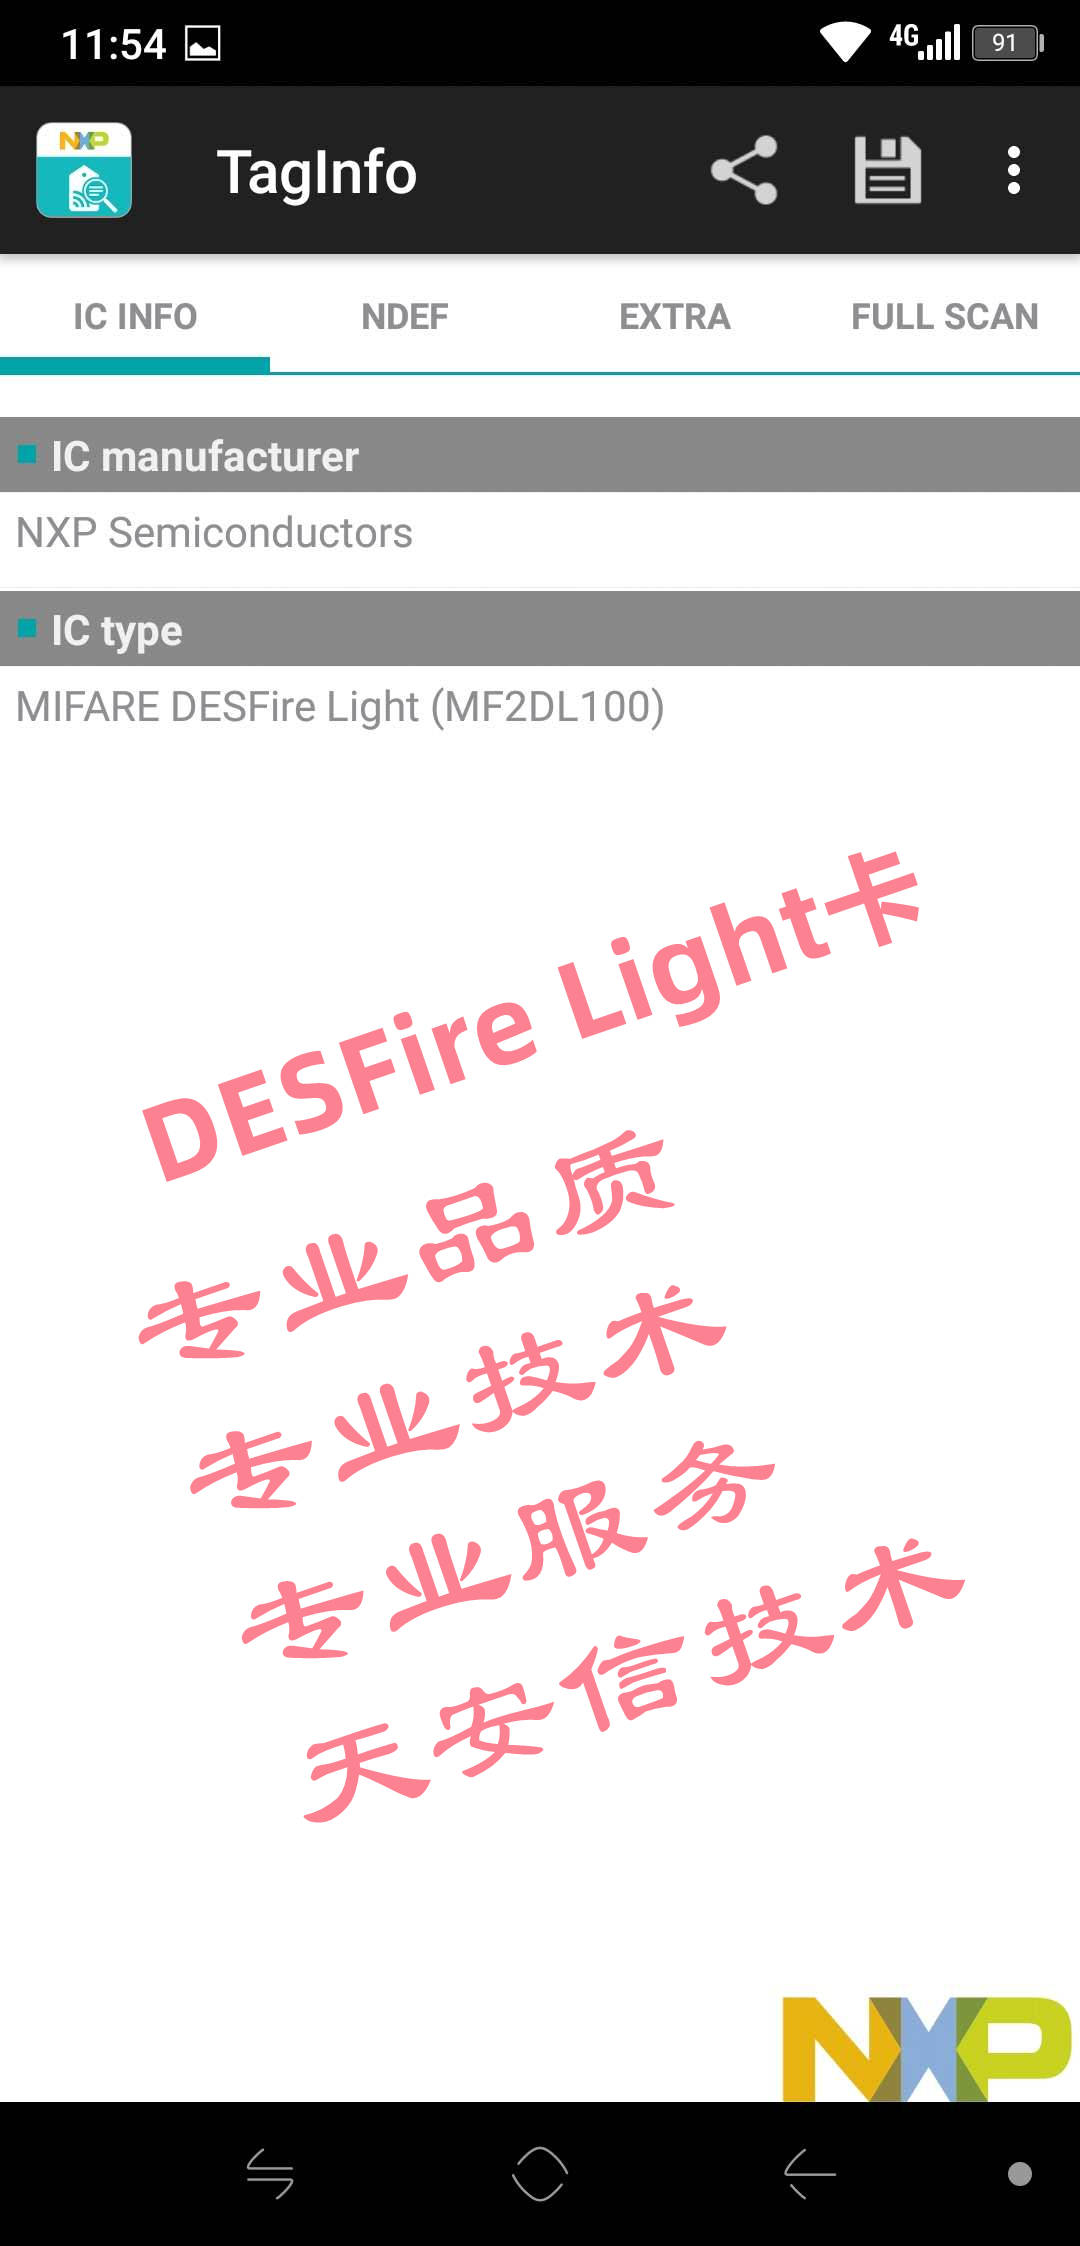 DESFire Light芯片卡门禁卡会员卡nfc type 4 tag图片